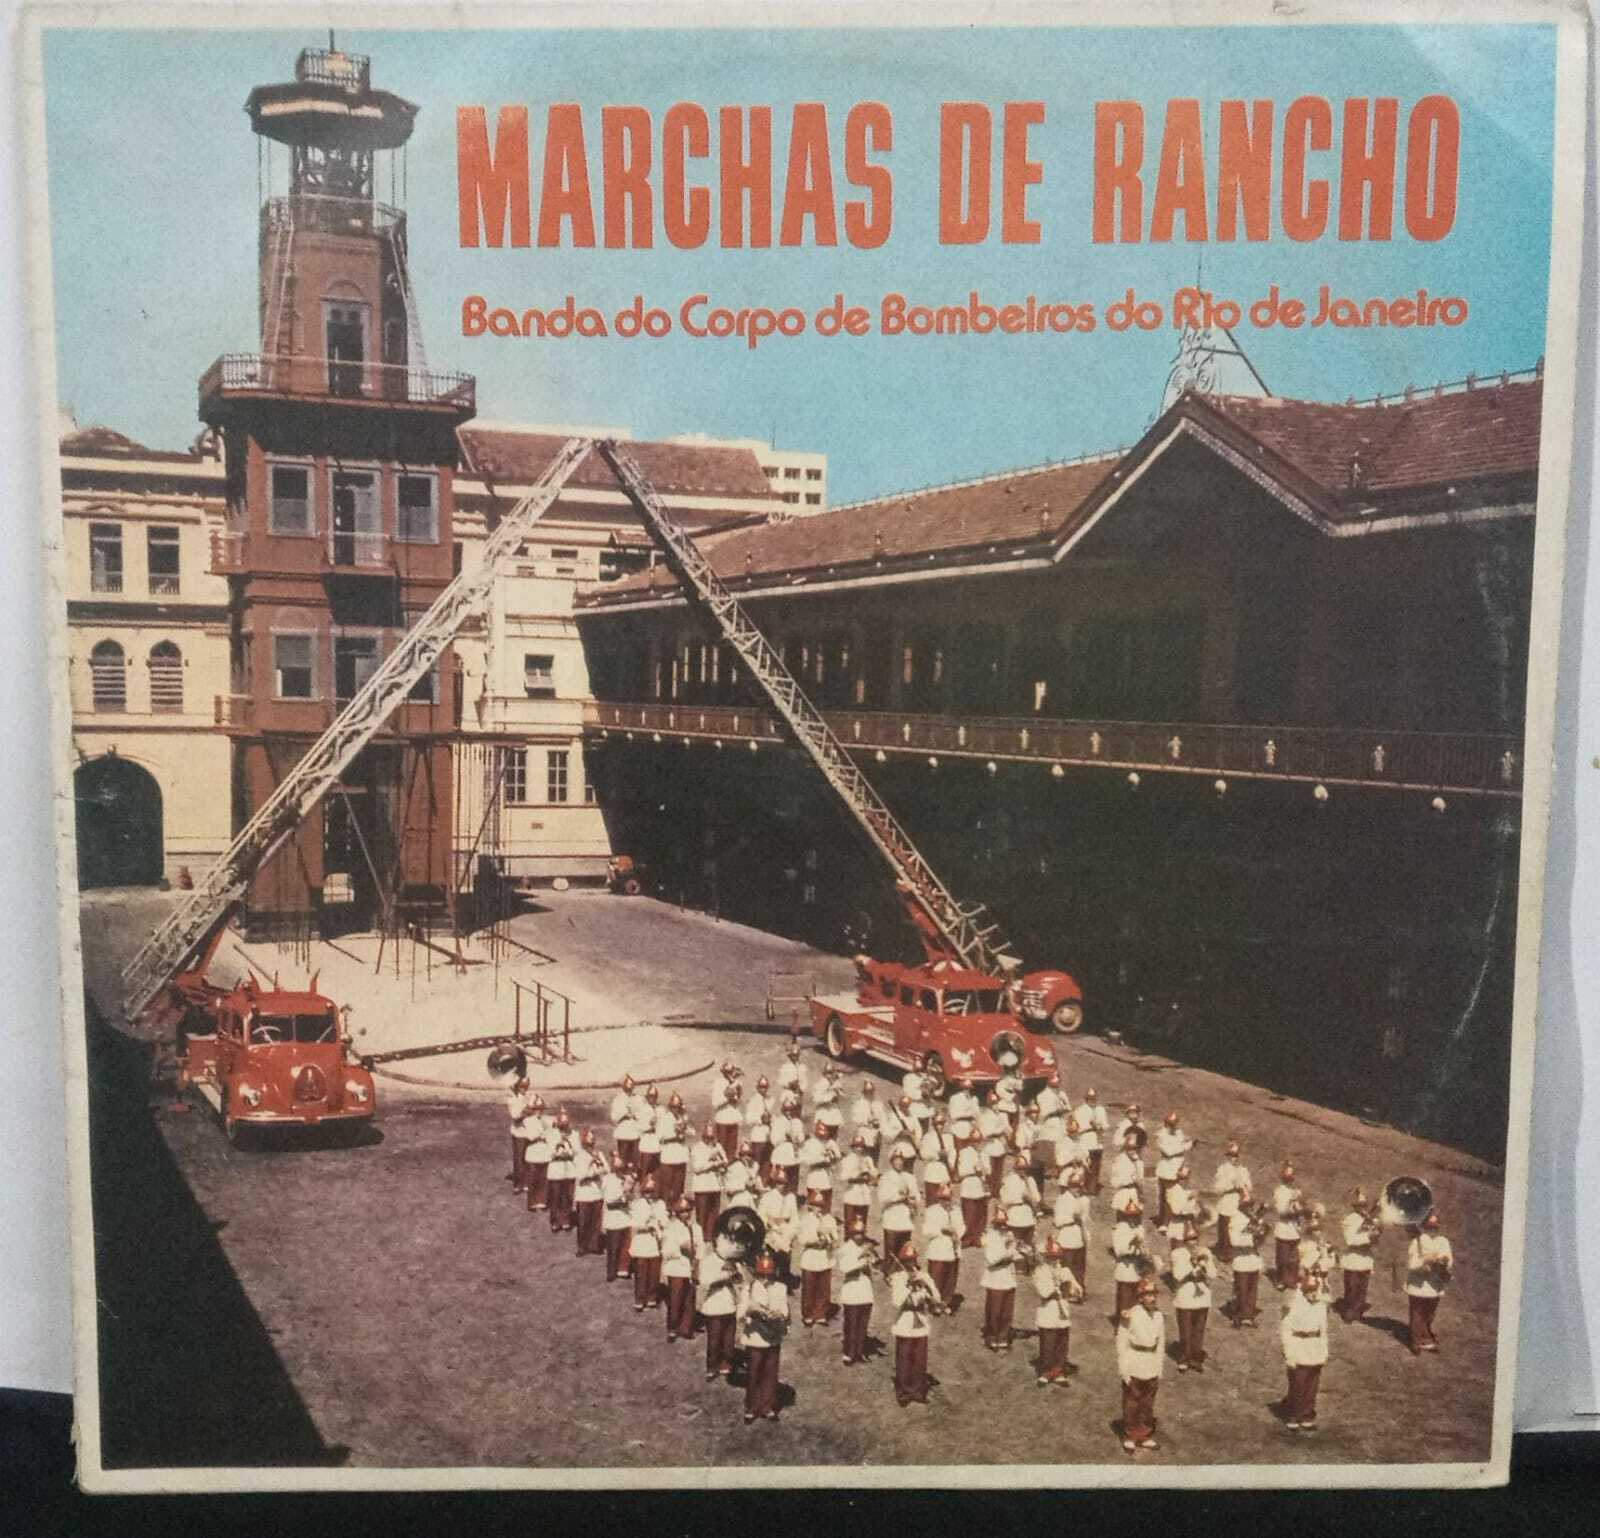 Vinil - Banda Do Corpo De Bombeiros Do Rio De Janeiro - Marchas De Rancho